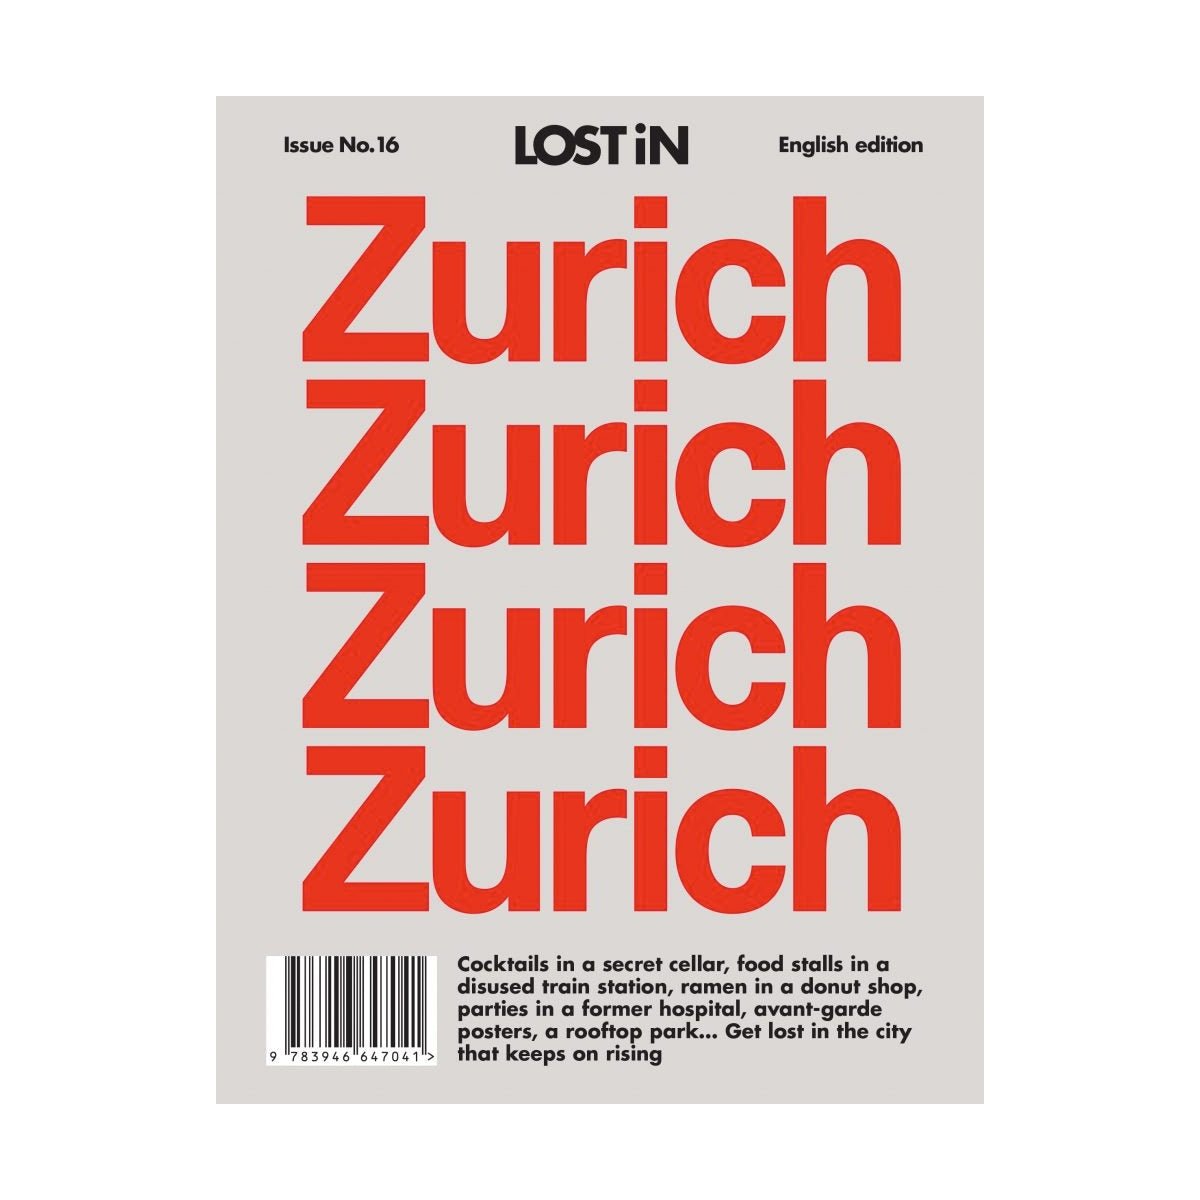 Gestalten: Lost iN Zurich  - Allike Store